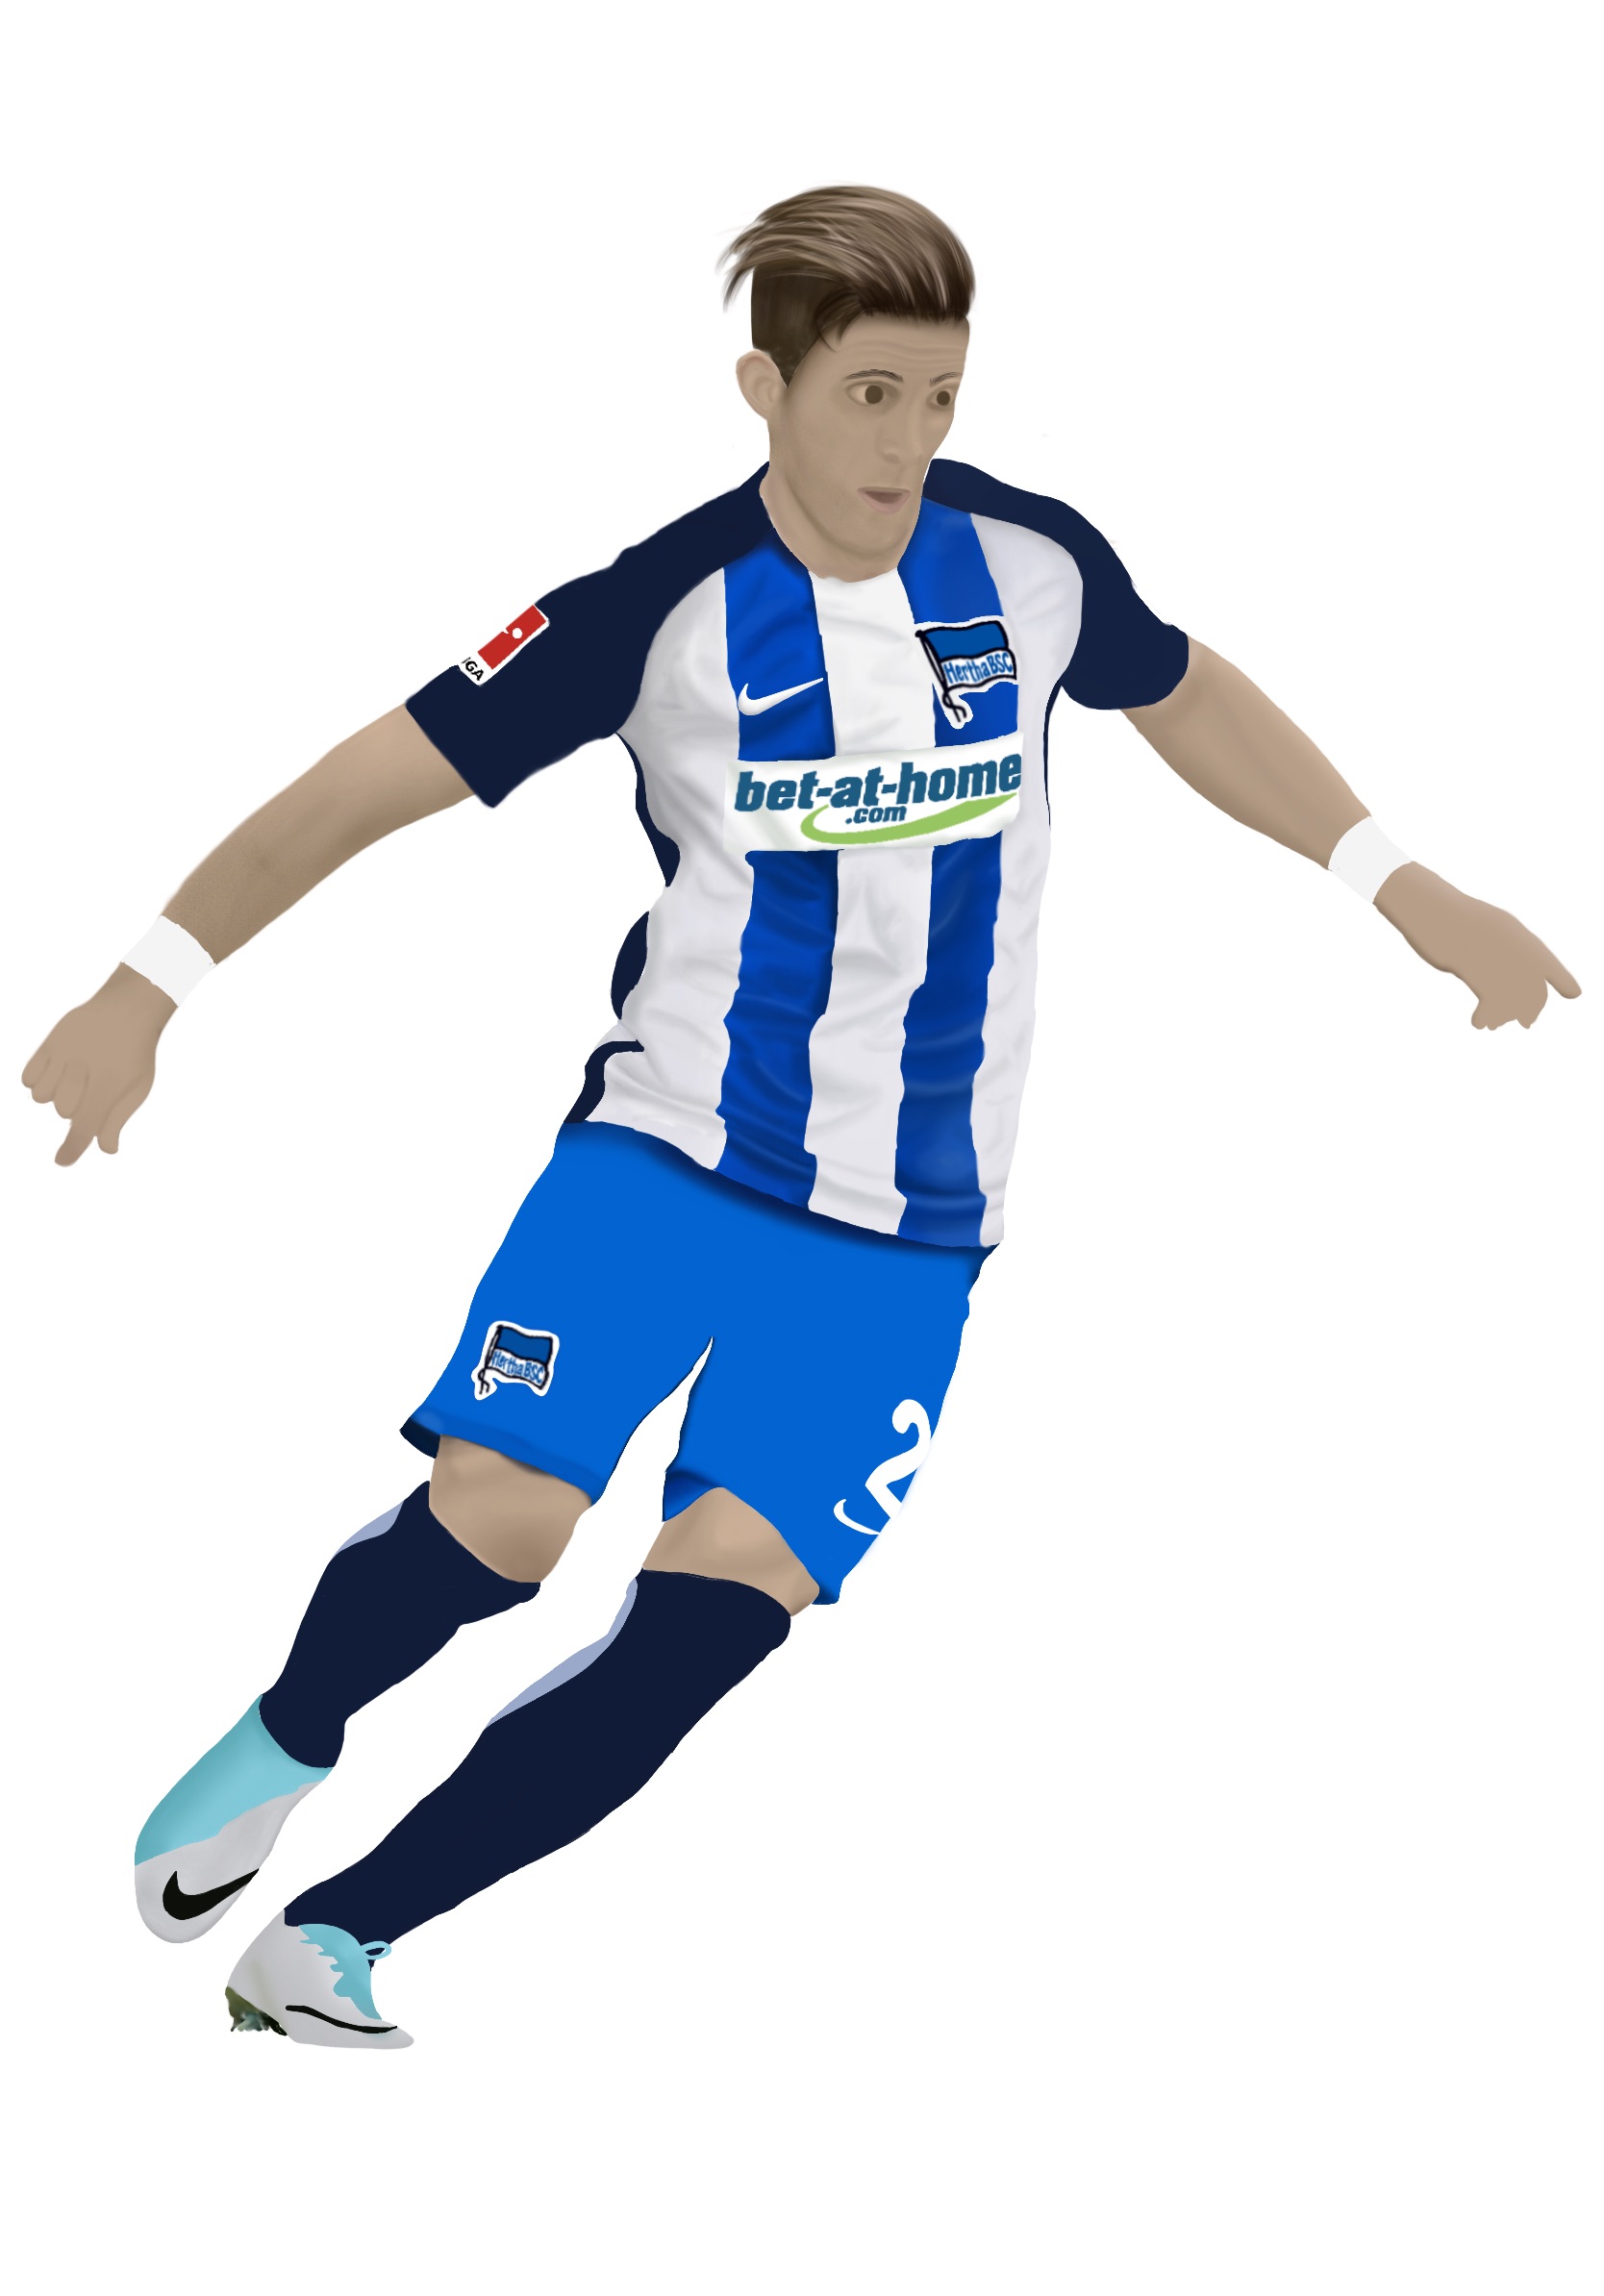 Porträtzeichnung vom Fußballspieler Peter Pekarik von Hertha BSC, erstellt mit Procreate.